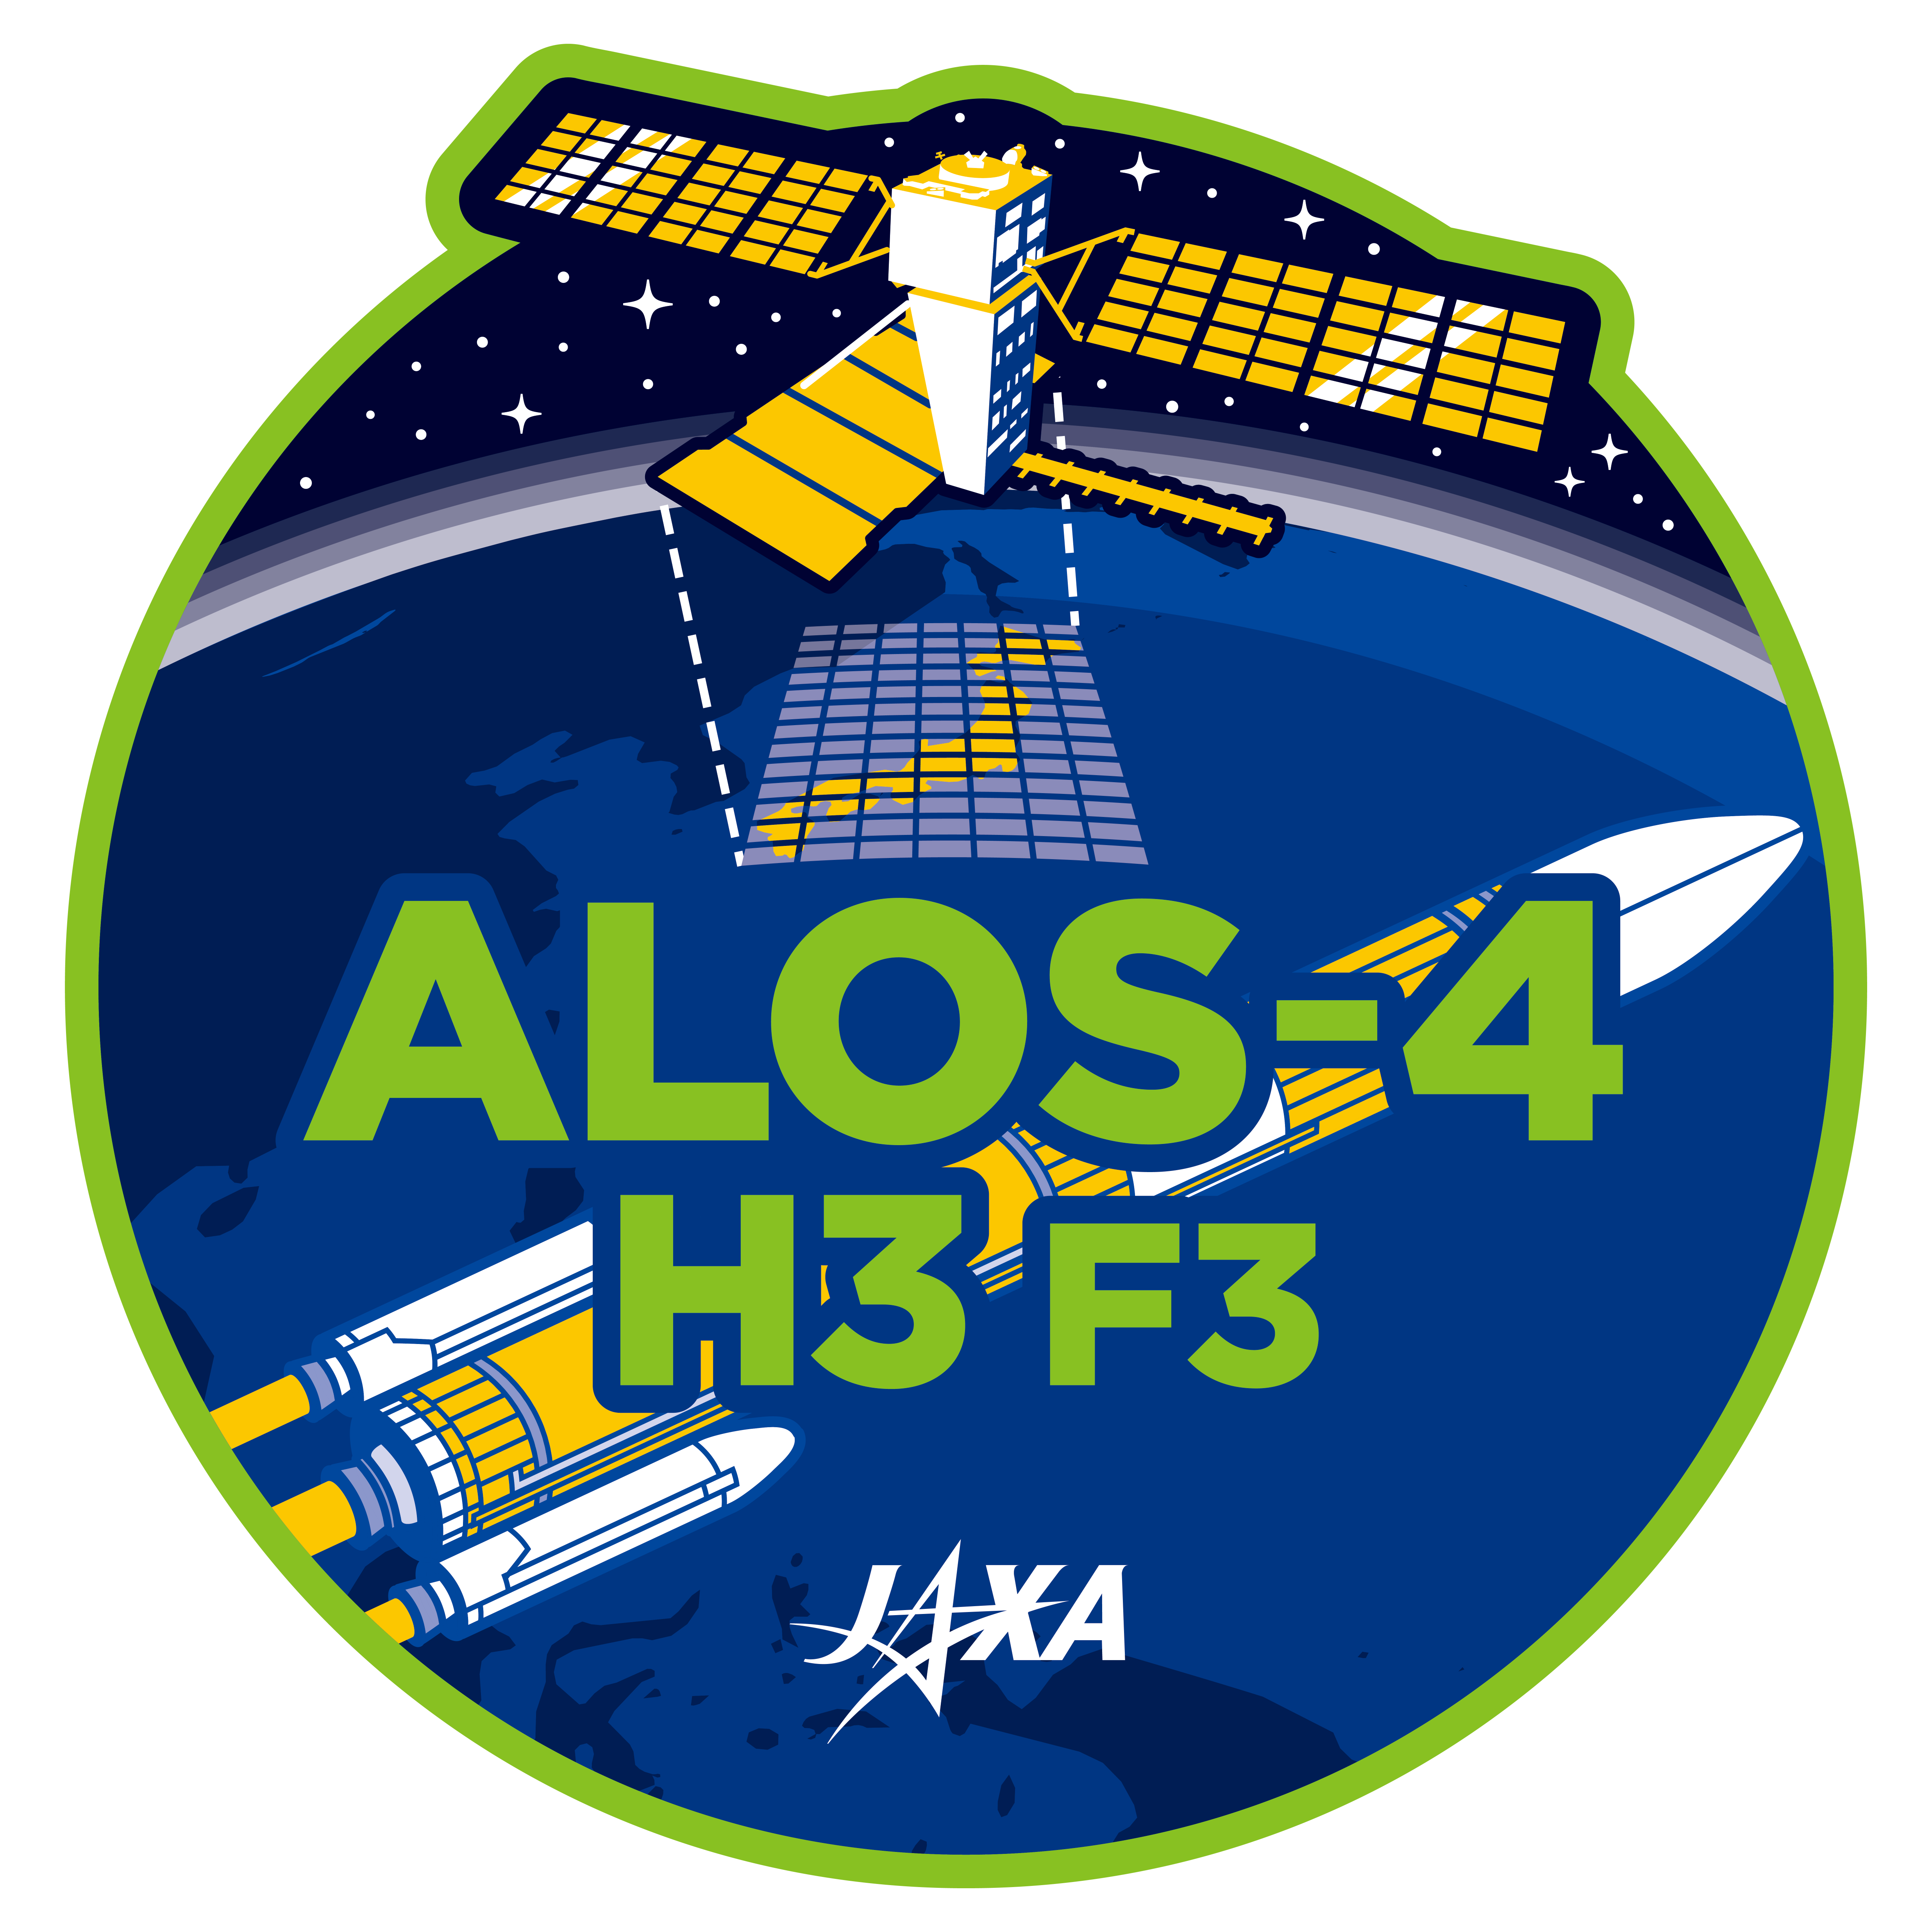 H3ロケット3号機・ ALOS-4 打上げ記念 ステッカー